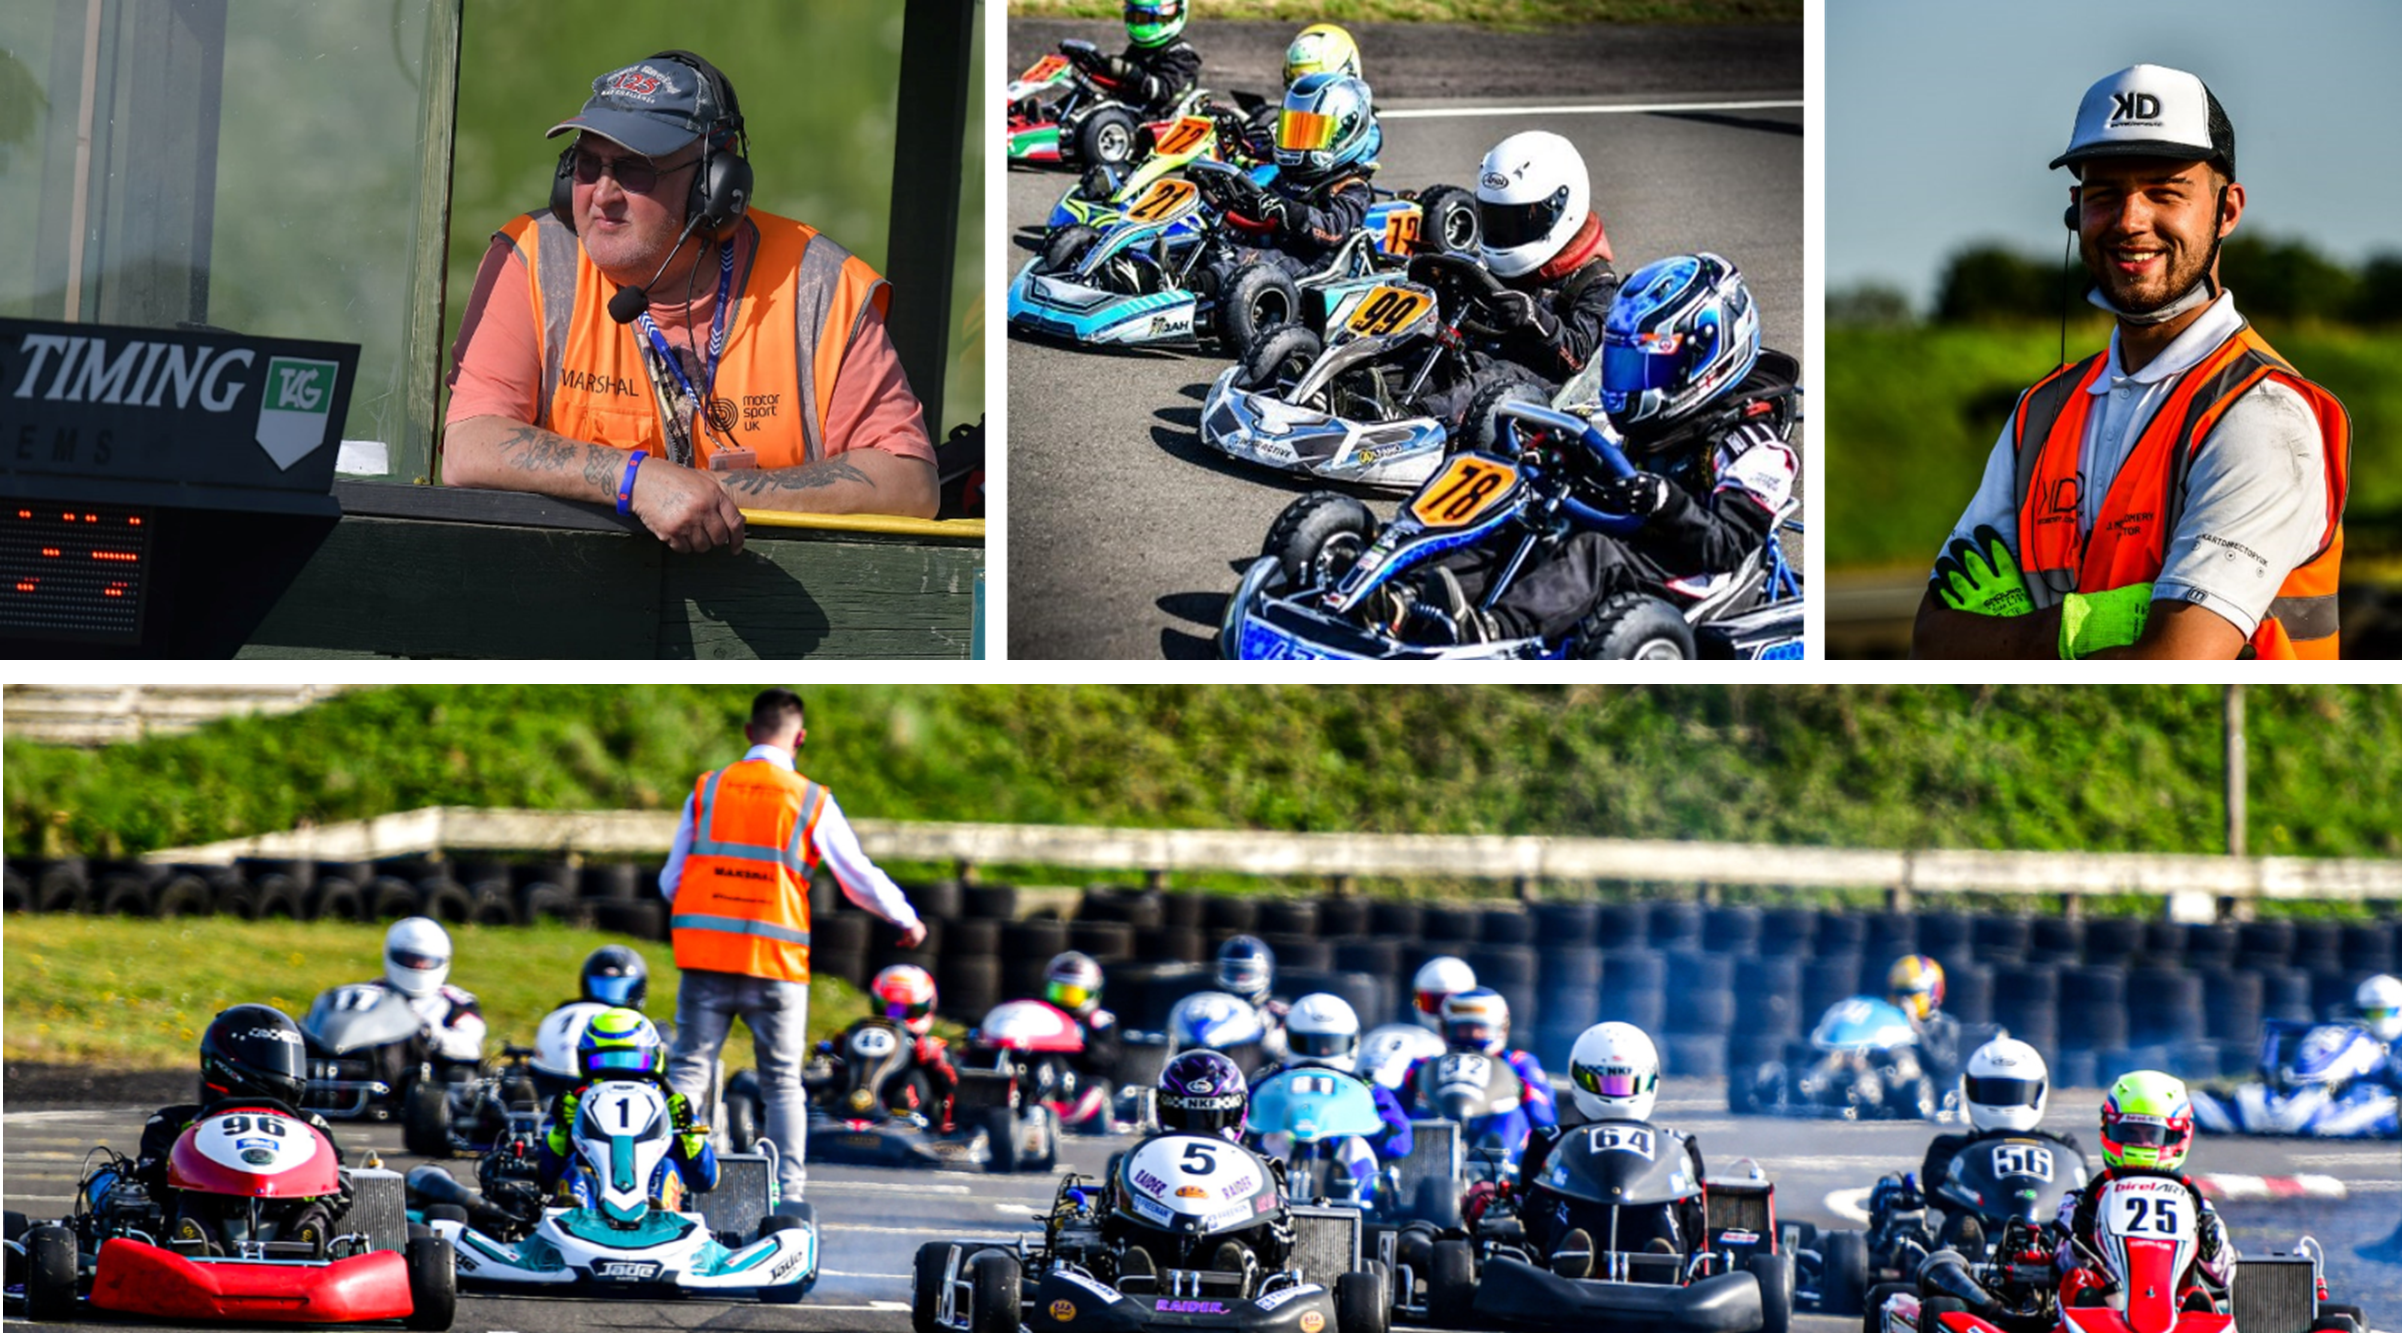 Shenington Kart Racing Club